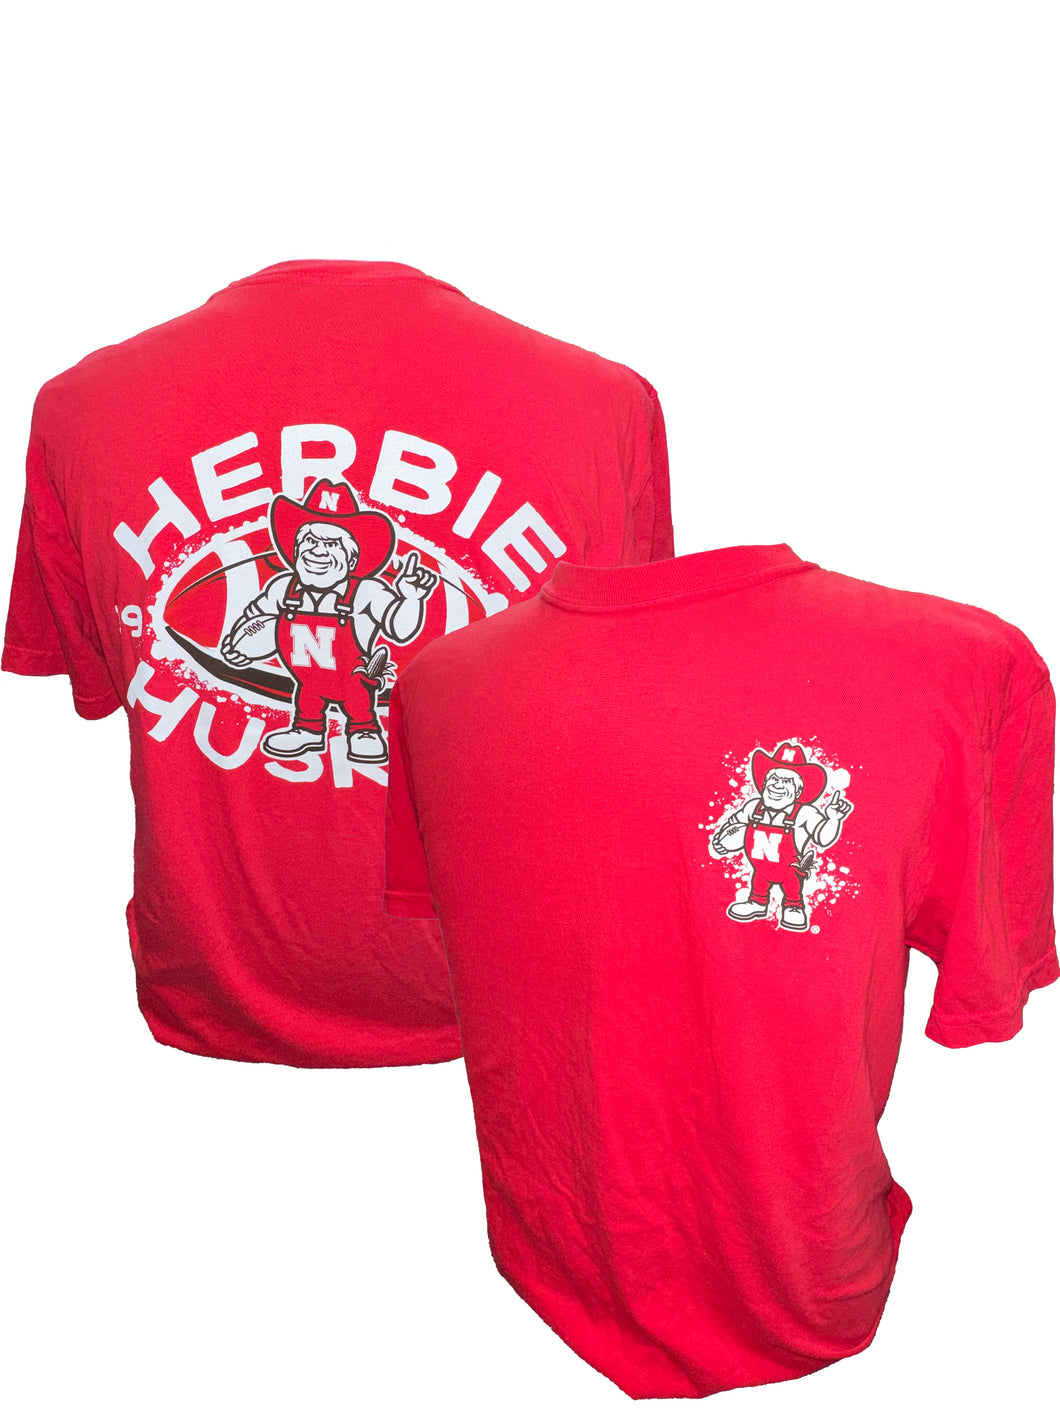 Nebraska Herbie Football Shortsleeve - RED